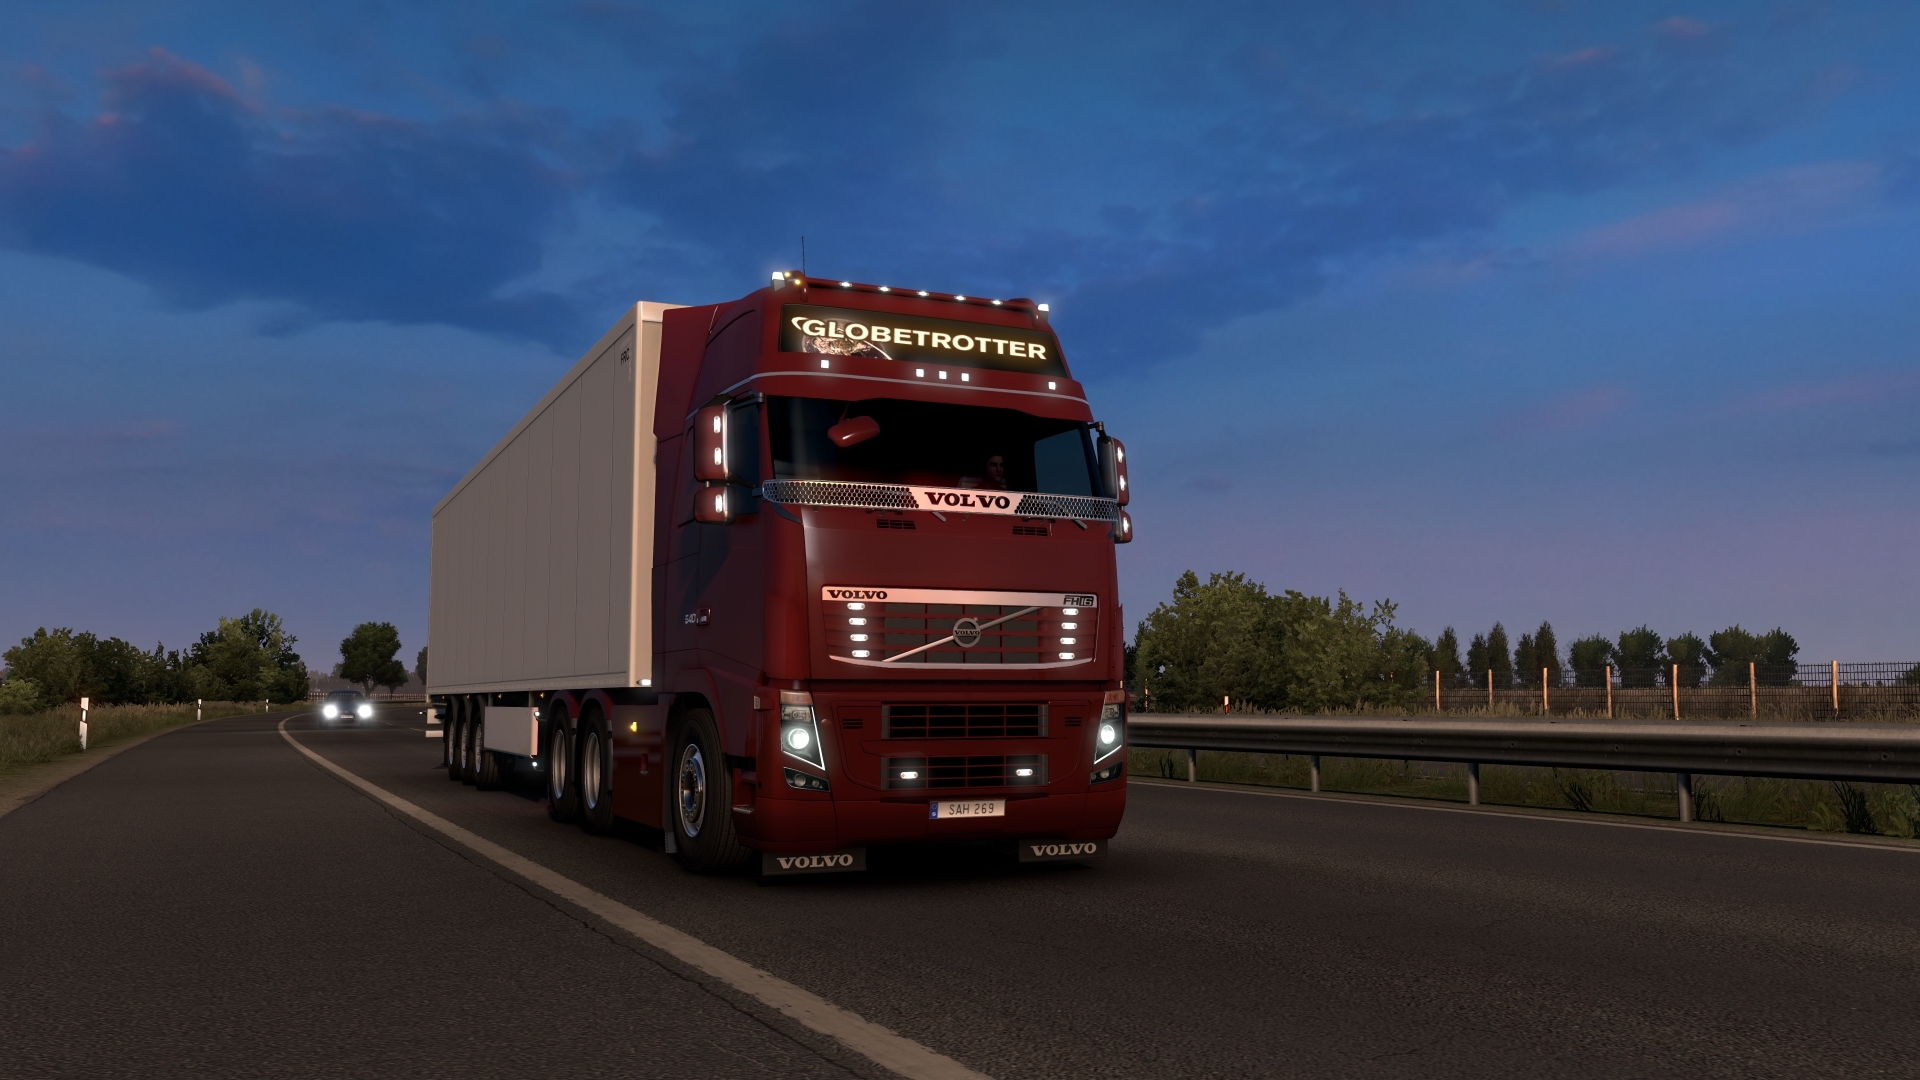 euro truck simulator 2 mac download